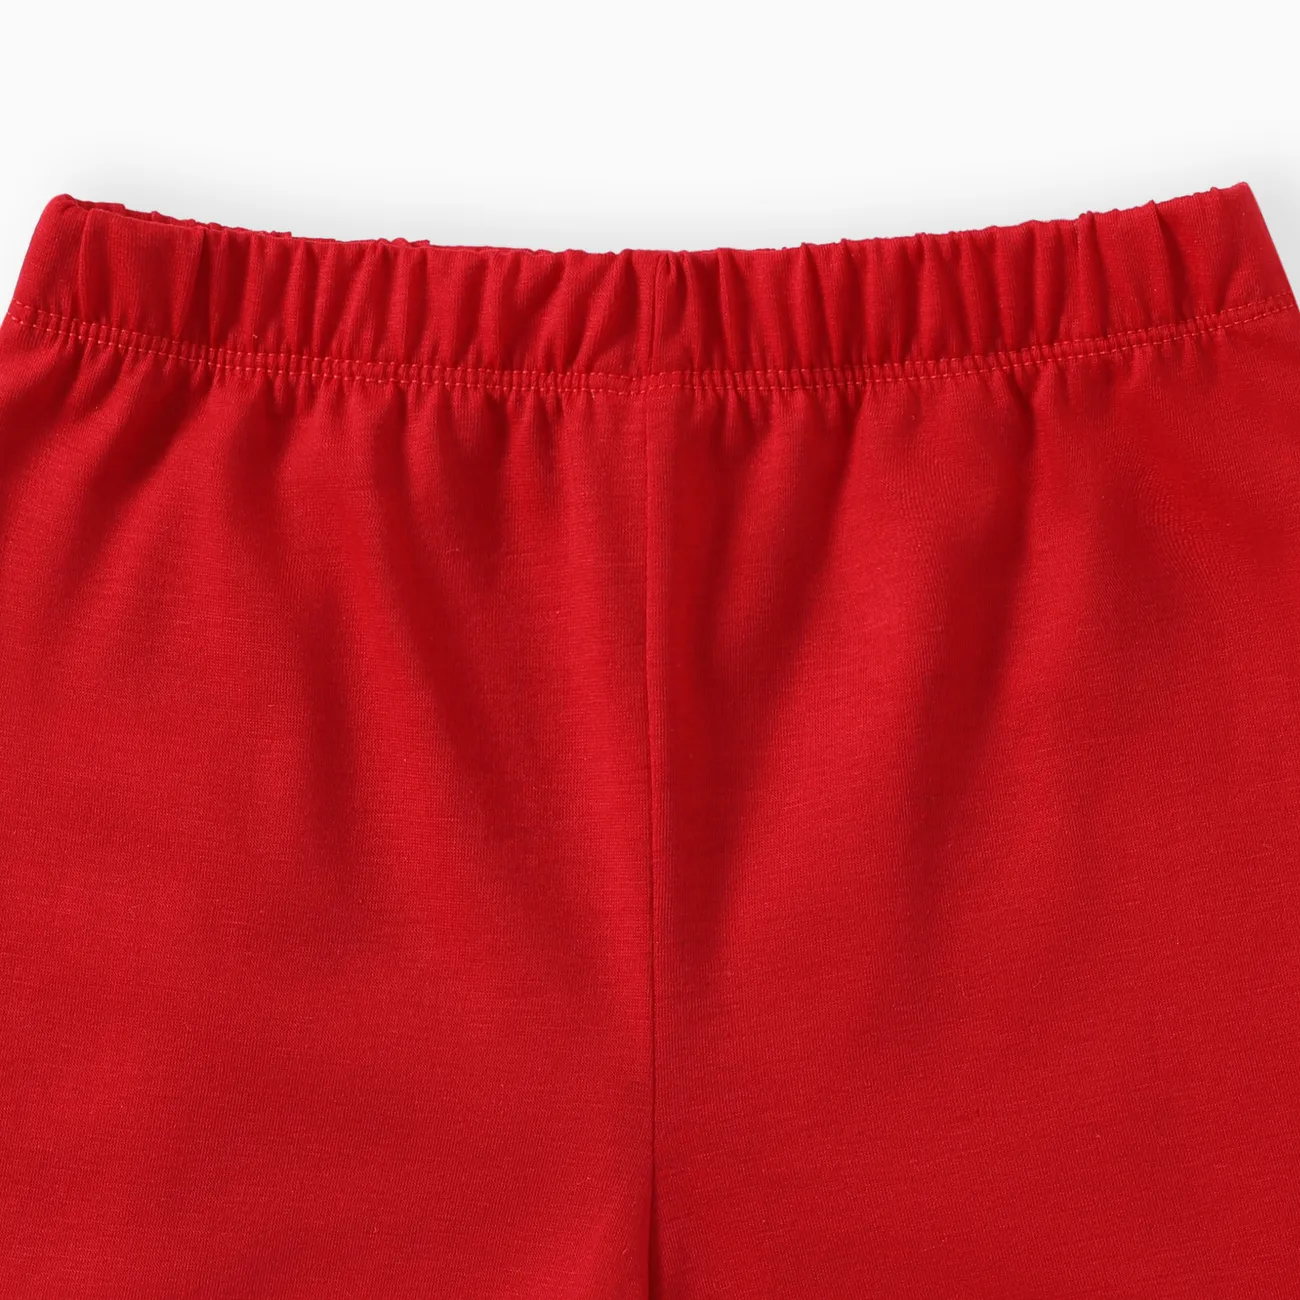 Niño pequeño / niño niño / niña 2 piezas de juego de pijamas de solapa de color sólido Rojo big image 1